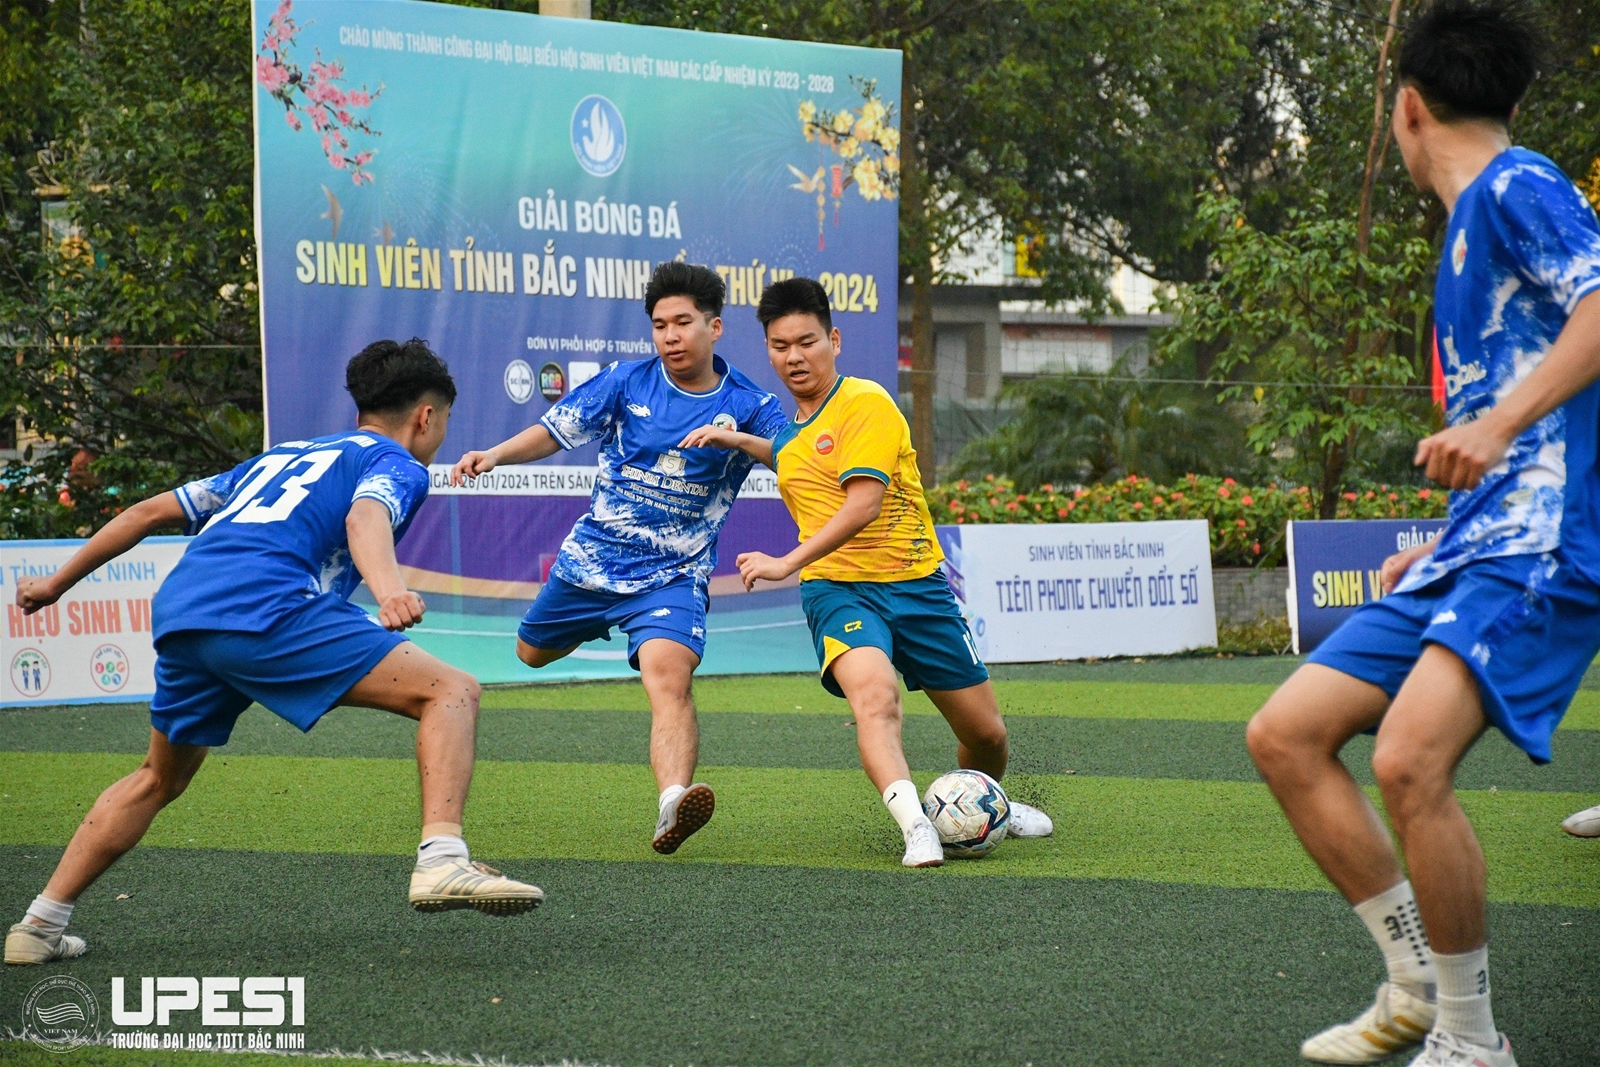 Hội sinh viên trường Đại học TDTT Bắc Ninh tham gia giải bóng đá sinh viên tỉnh Bắc Ninh lần thứ VI - năm 2024